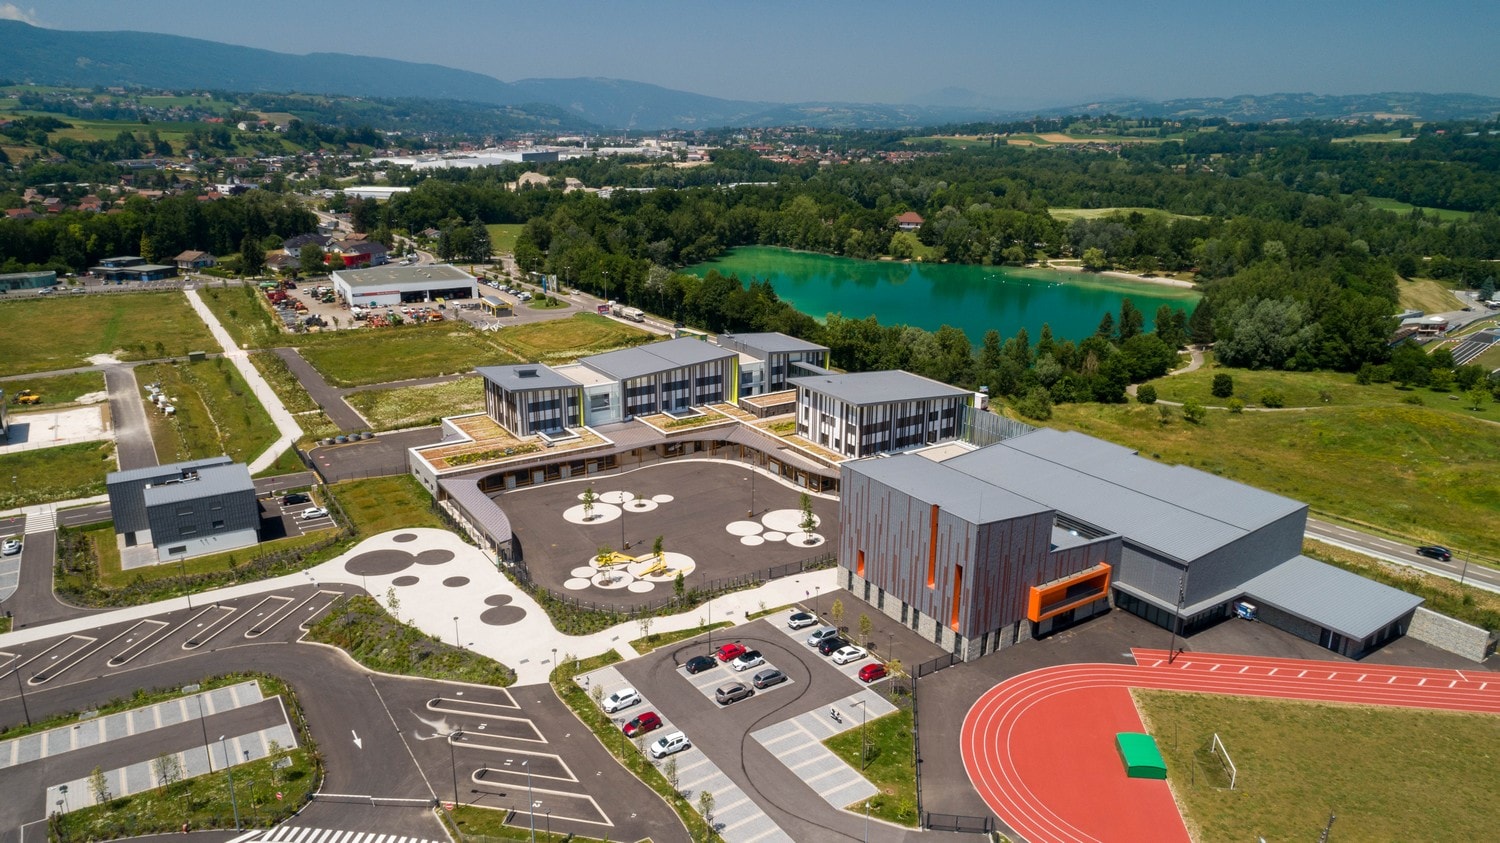 Annecy : Collège du Chéran - Vidéo Lauréate Fibois 2019 en Haute-Savoie